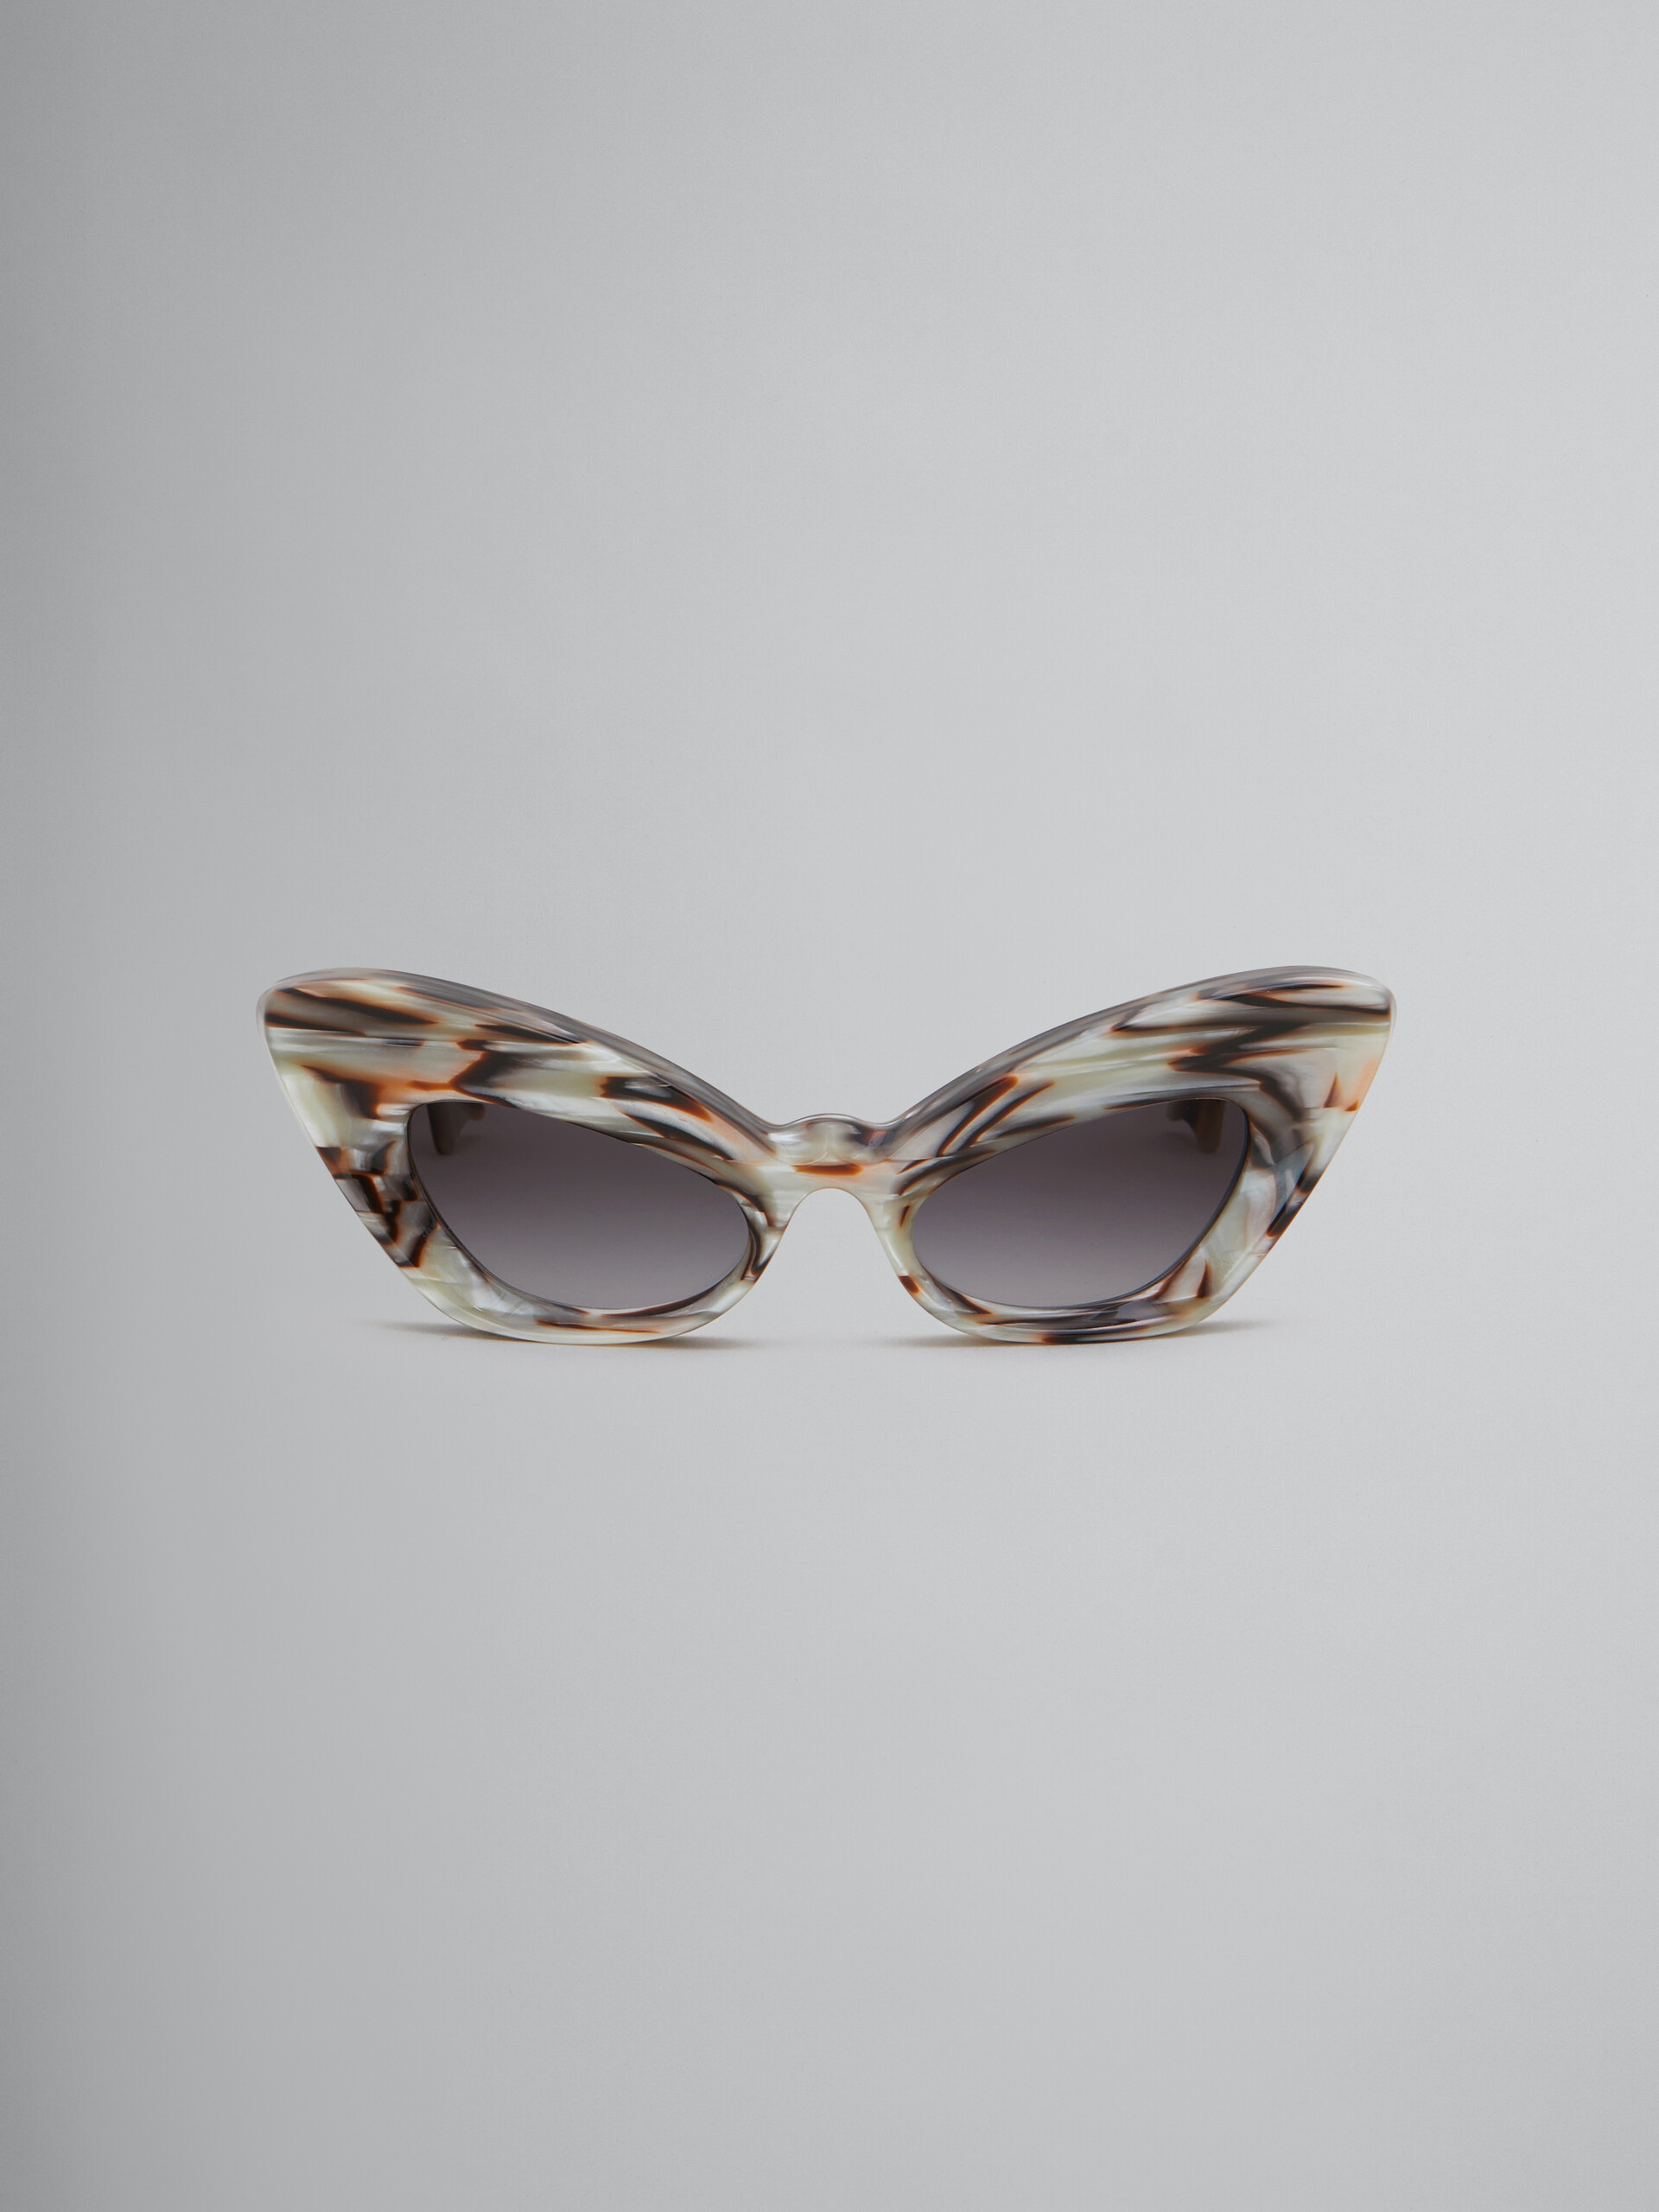 Occhiali Caelicola color marrone perlato - Occhiali da sole - Image 1